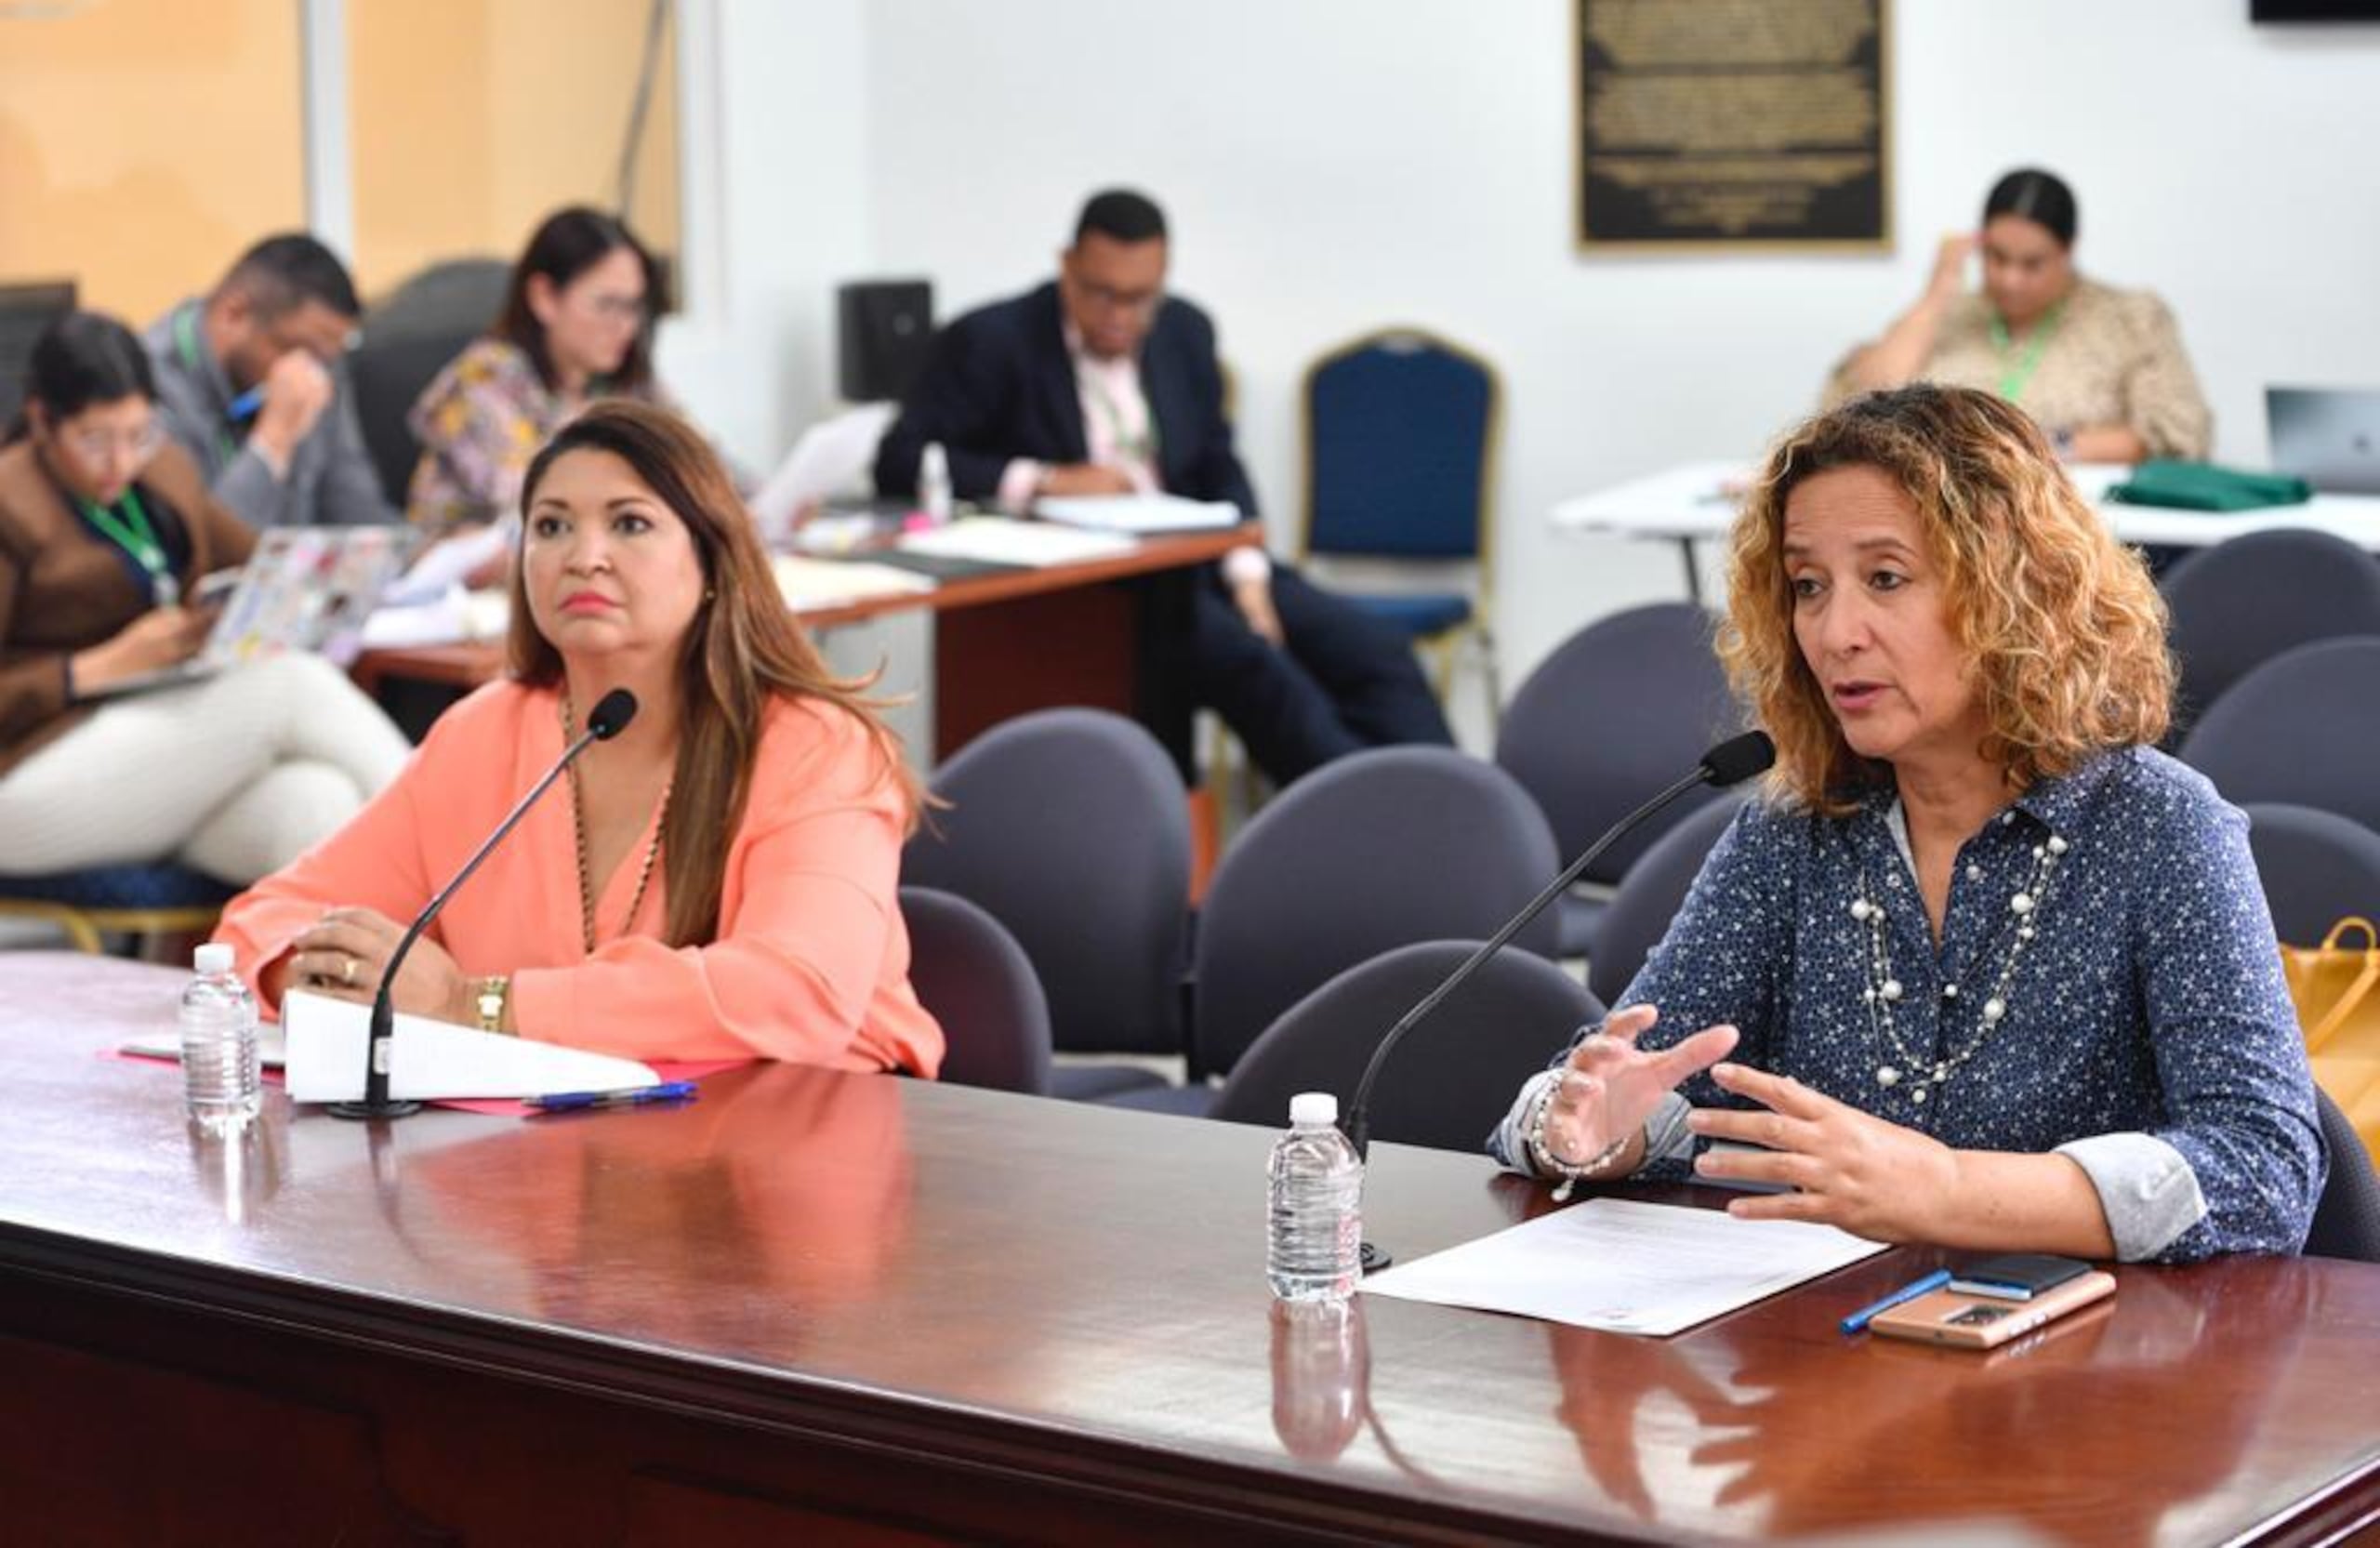 La presidenta del COPUR, Sara Rosario, dijo que la situación planteada en el P. de la C. 764 “no es significativa numéricamente en el deporte, pues la población transgénero a nivel mundial no es muy grande”.